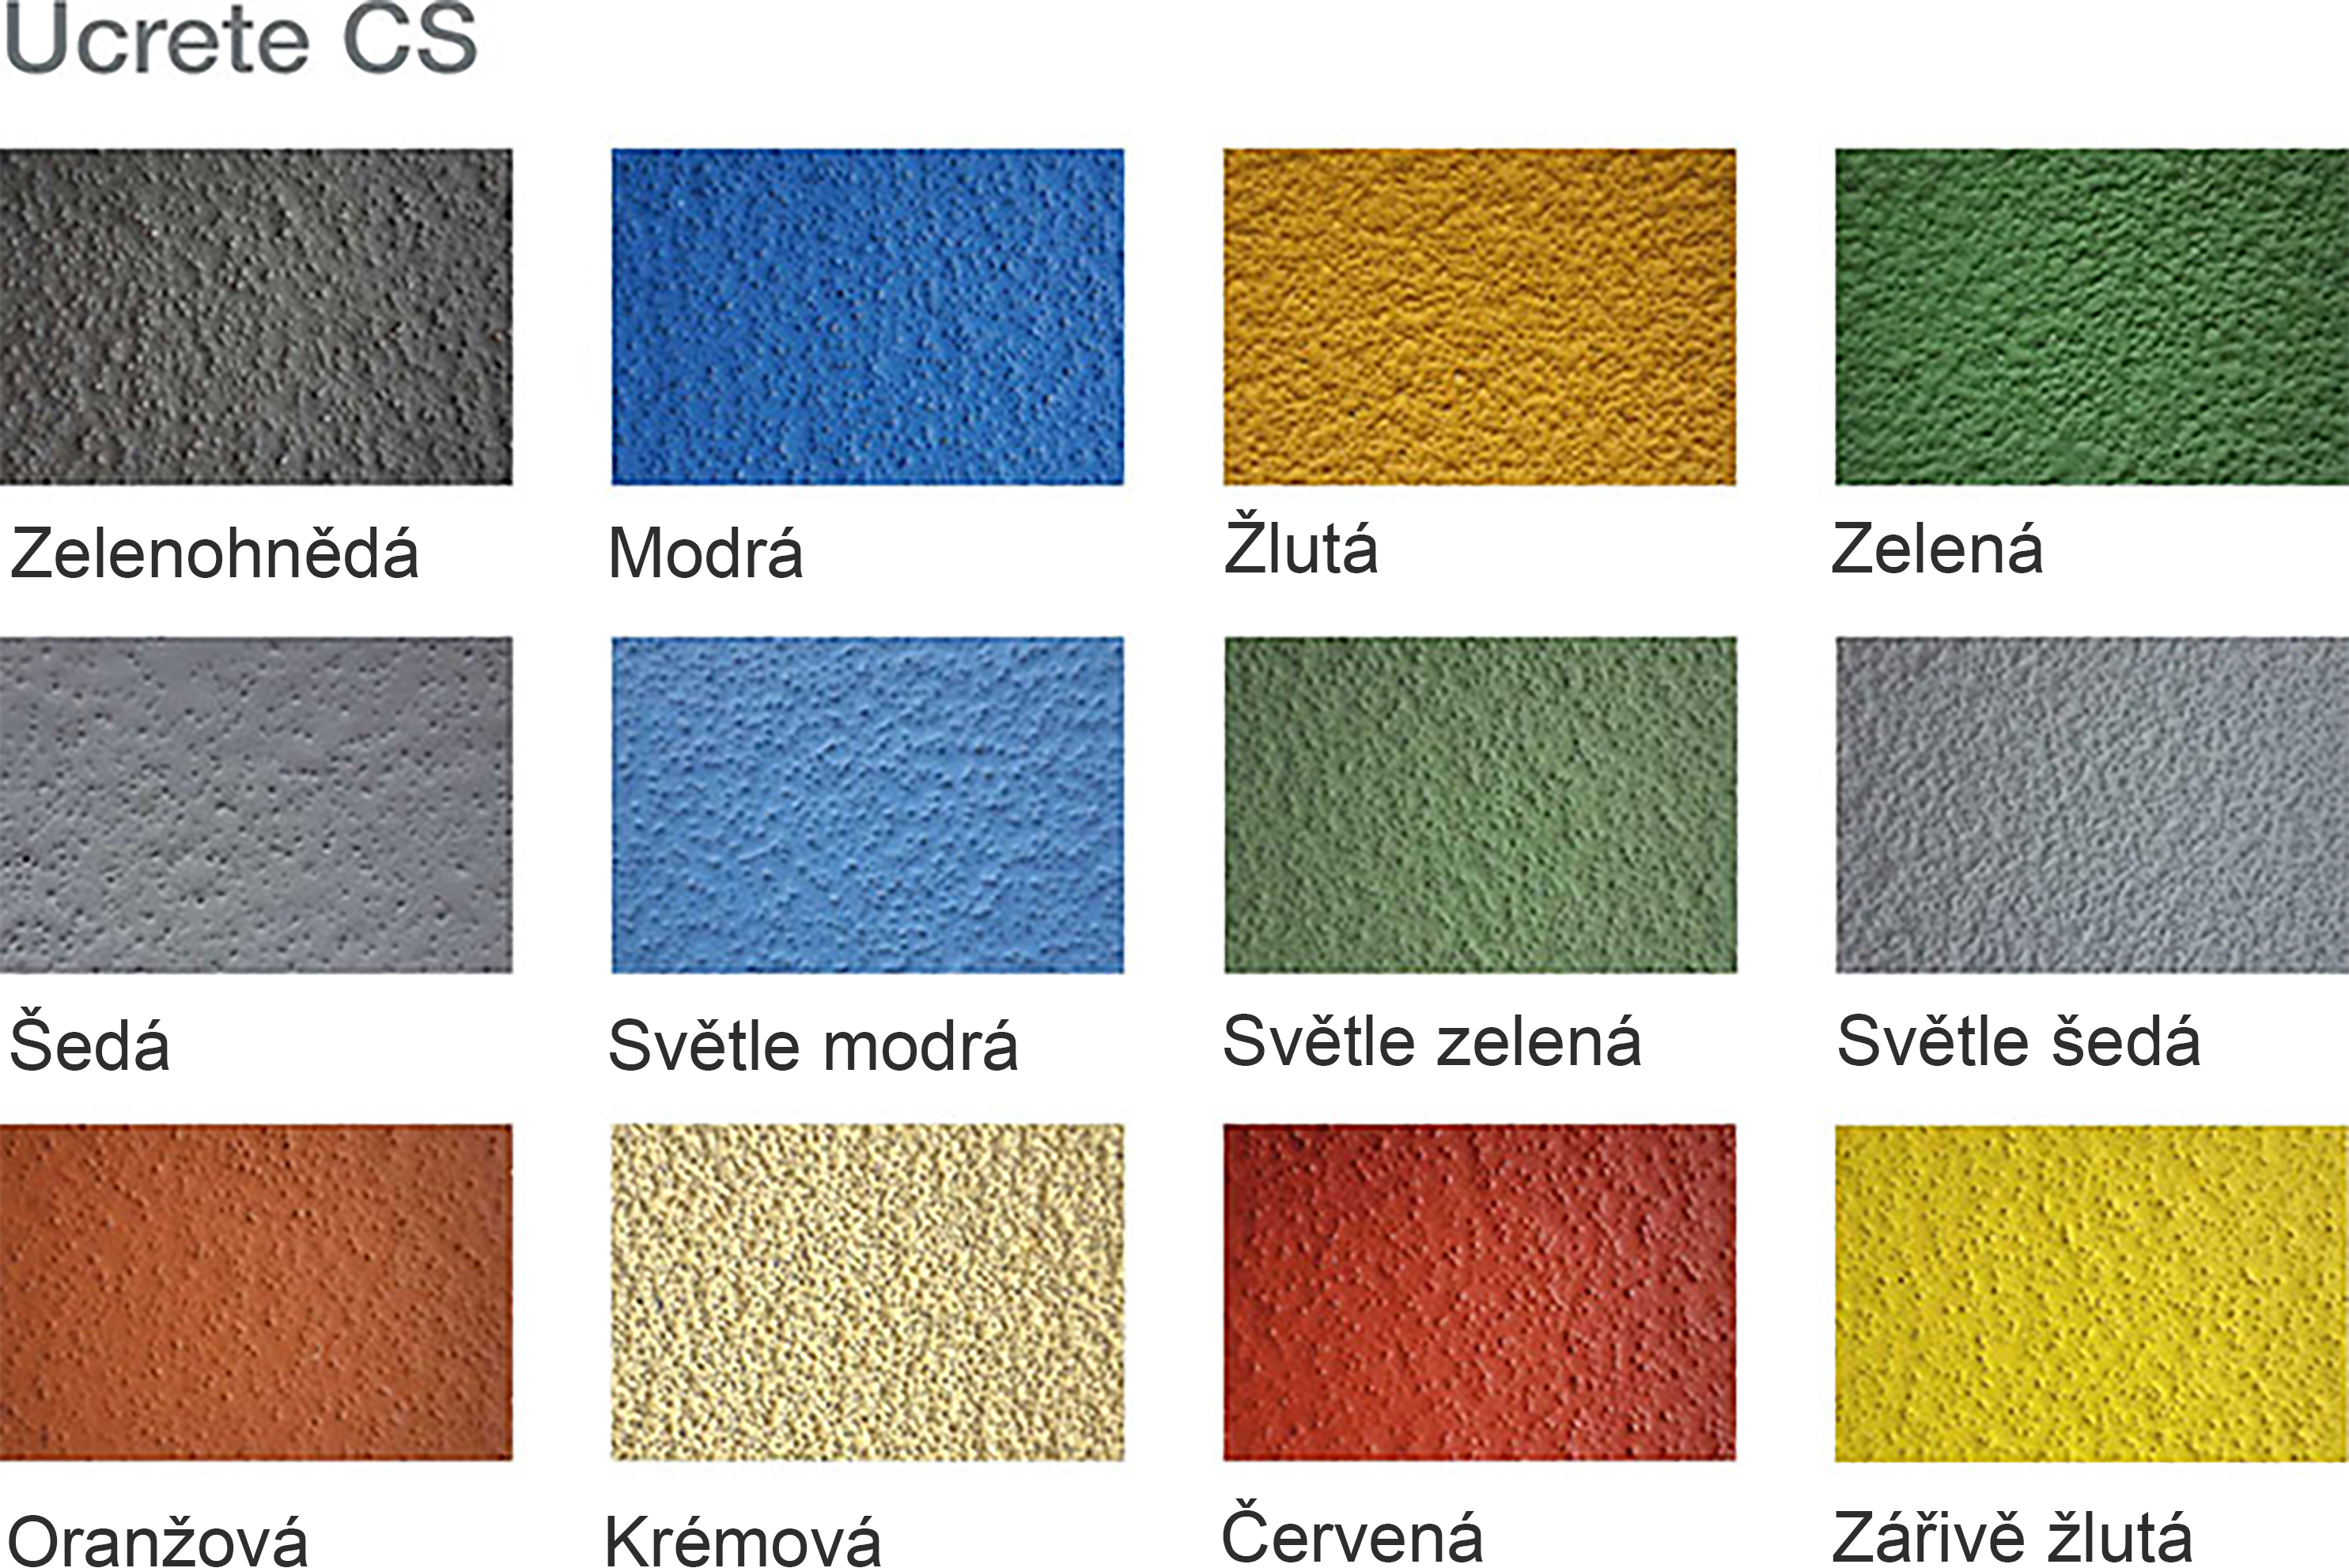 Podlahy Ucrete CS jsou k dispozici v široké škále barev